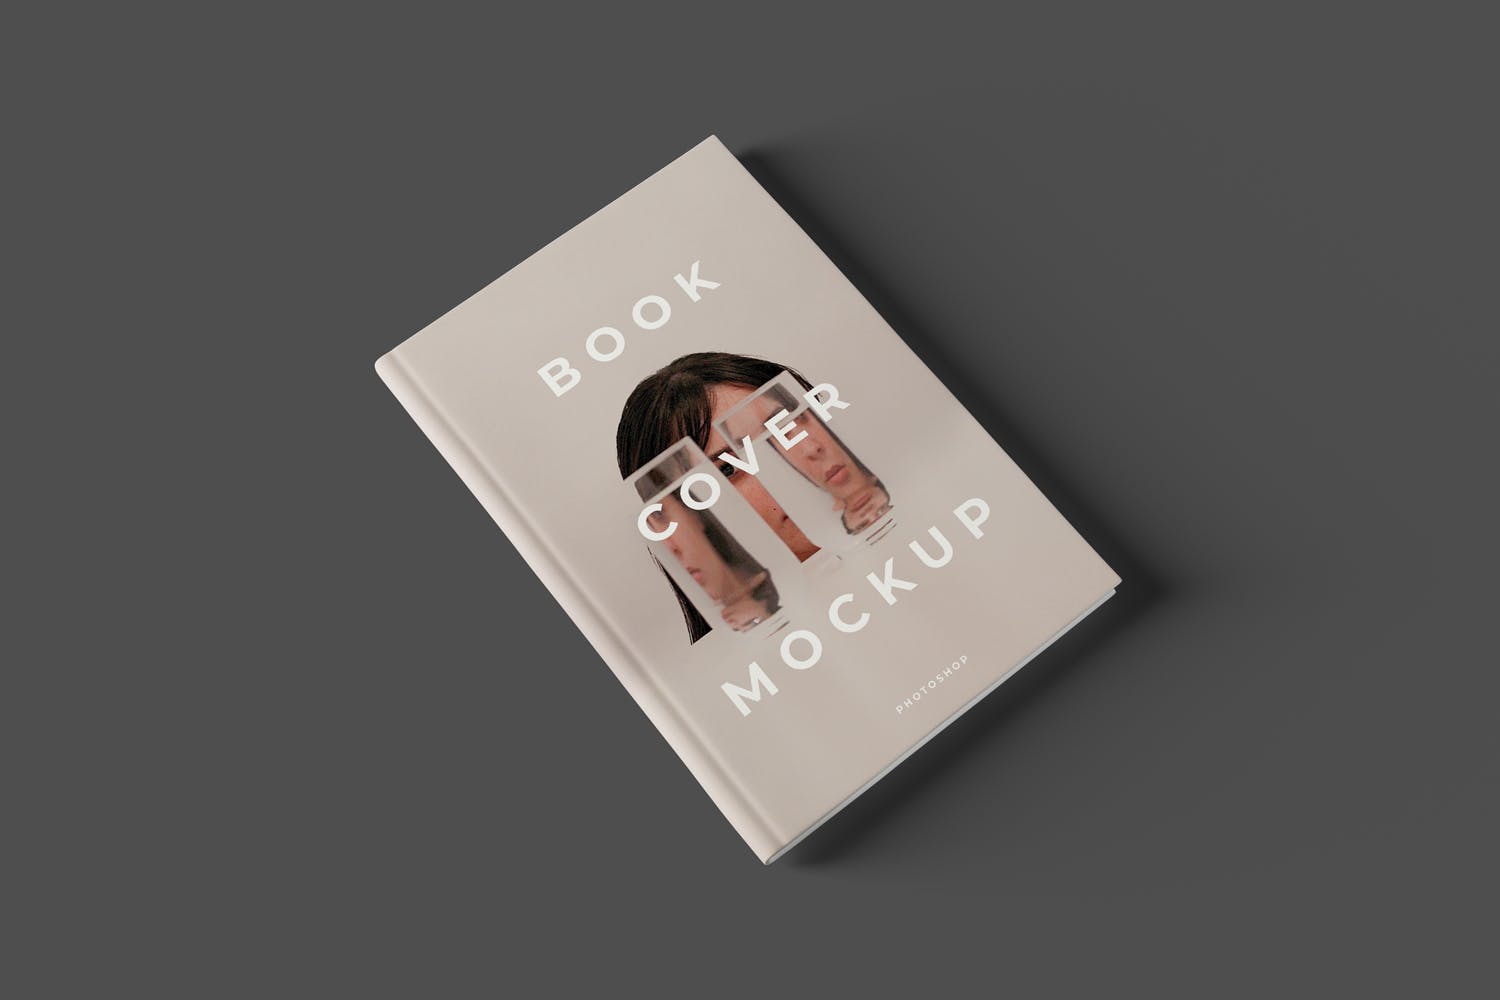 镂空设计风格精装图书封面设计样机模板 Book Cover Mockups插图(2)